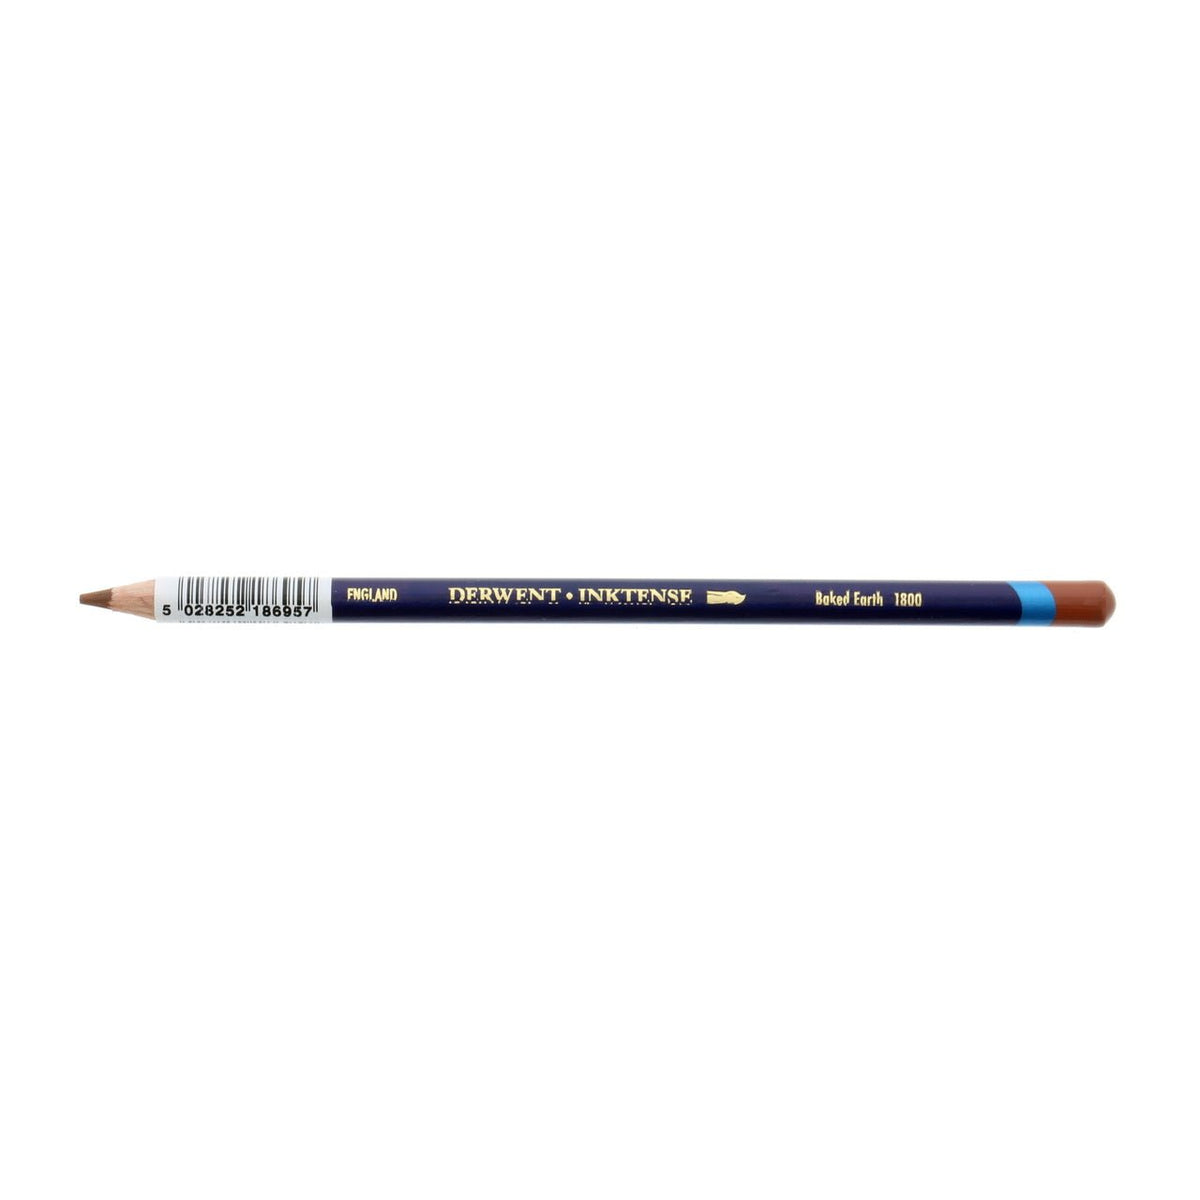 Derwent Inktense 6 Pencil Set